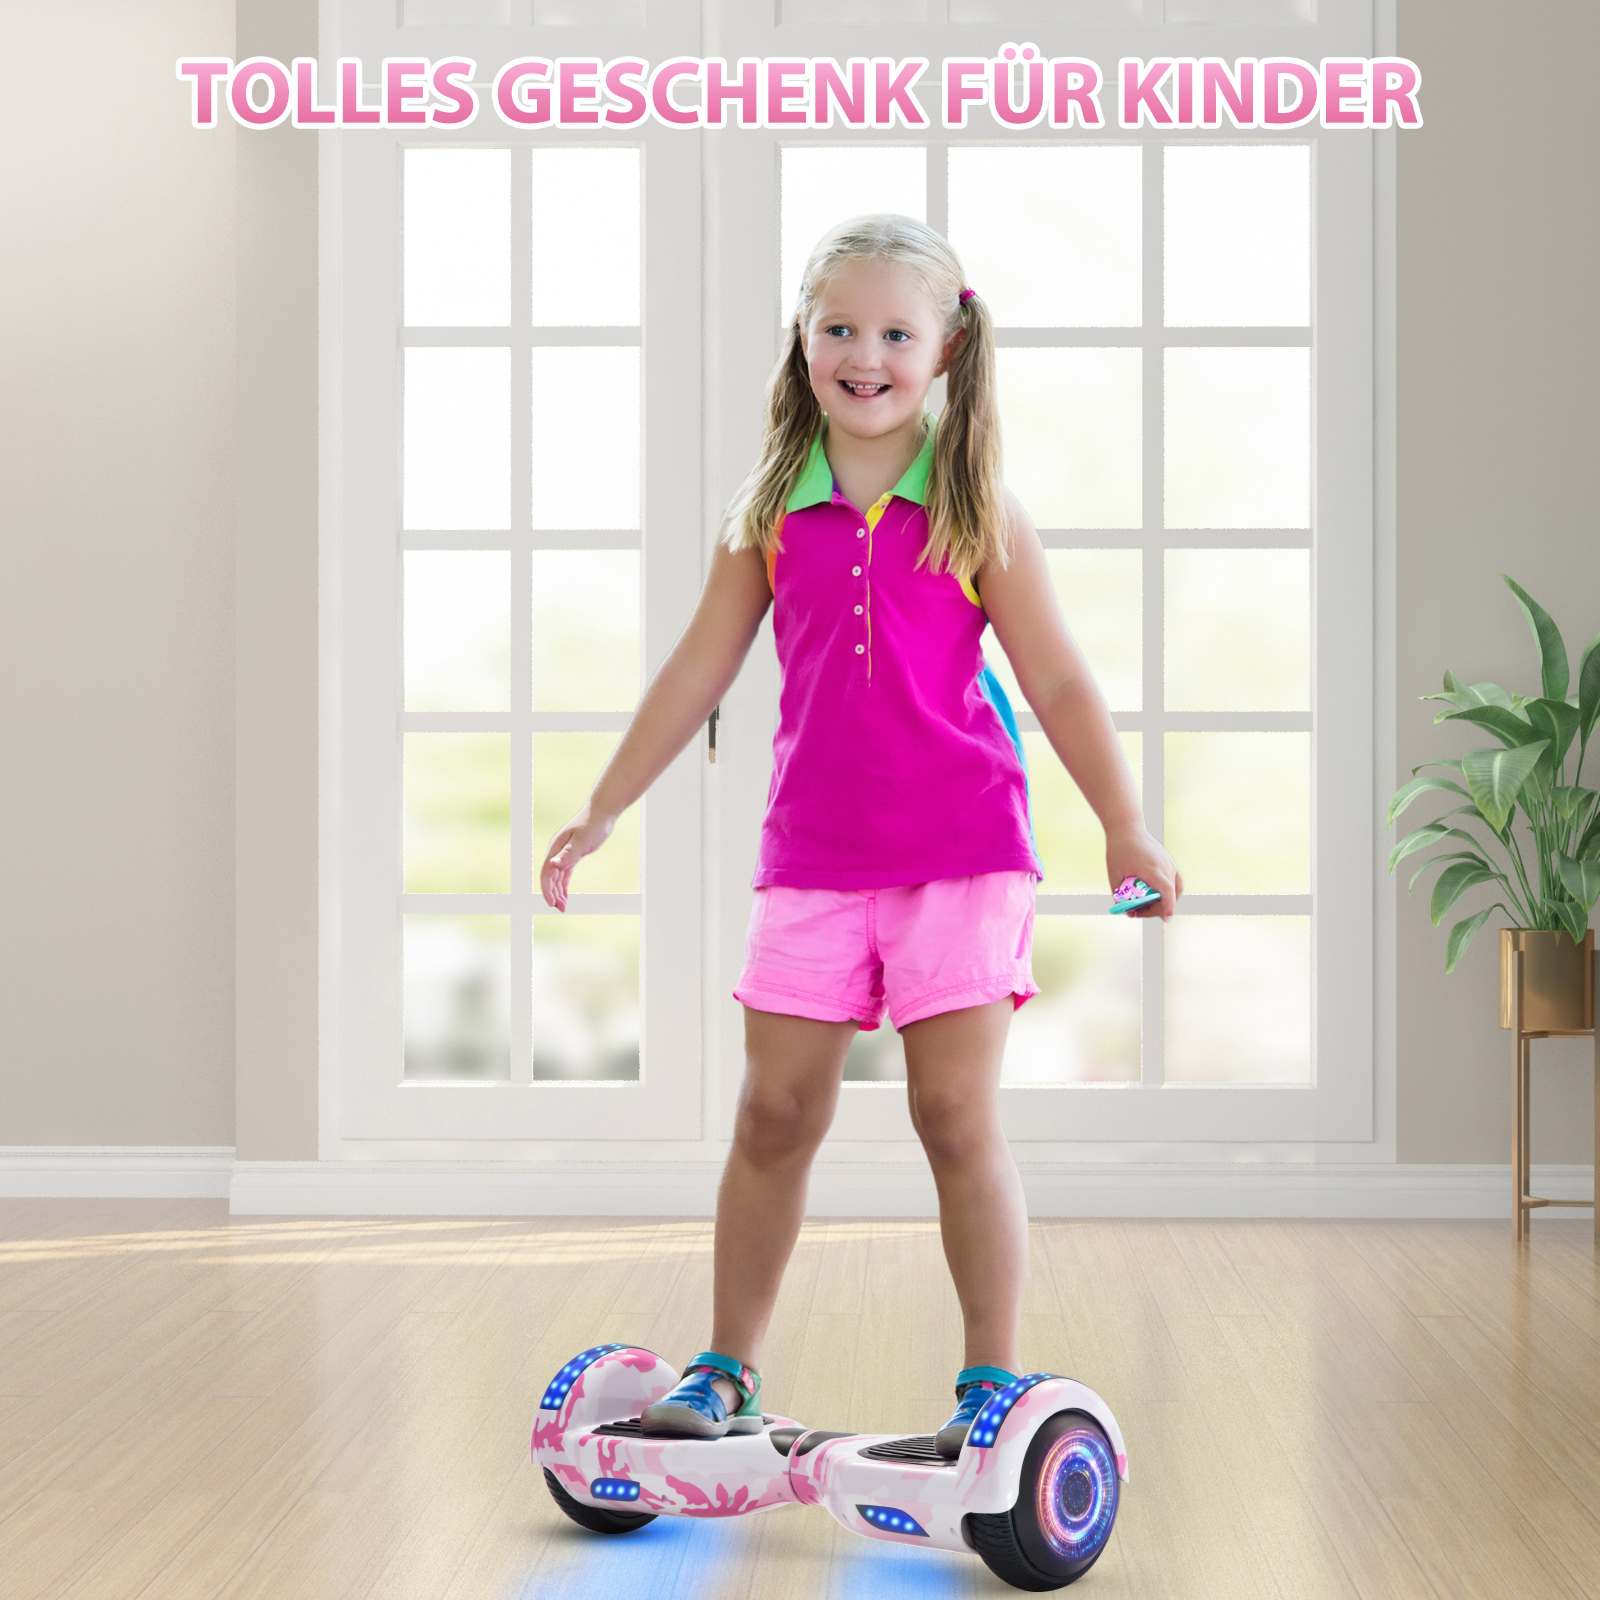 Neues 6,5" Camouflage pink Hoverboard für Kinder, mit Bluetooth Musik Lautsprecher und Disco LED Licht - 500W 12km/h